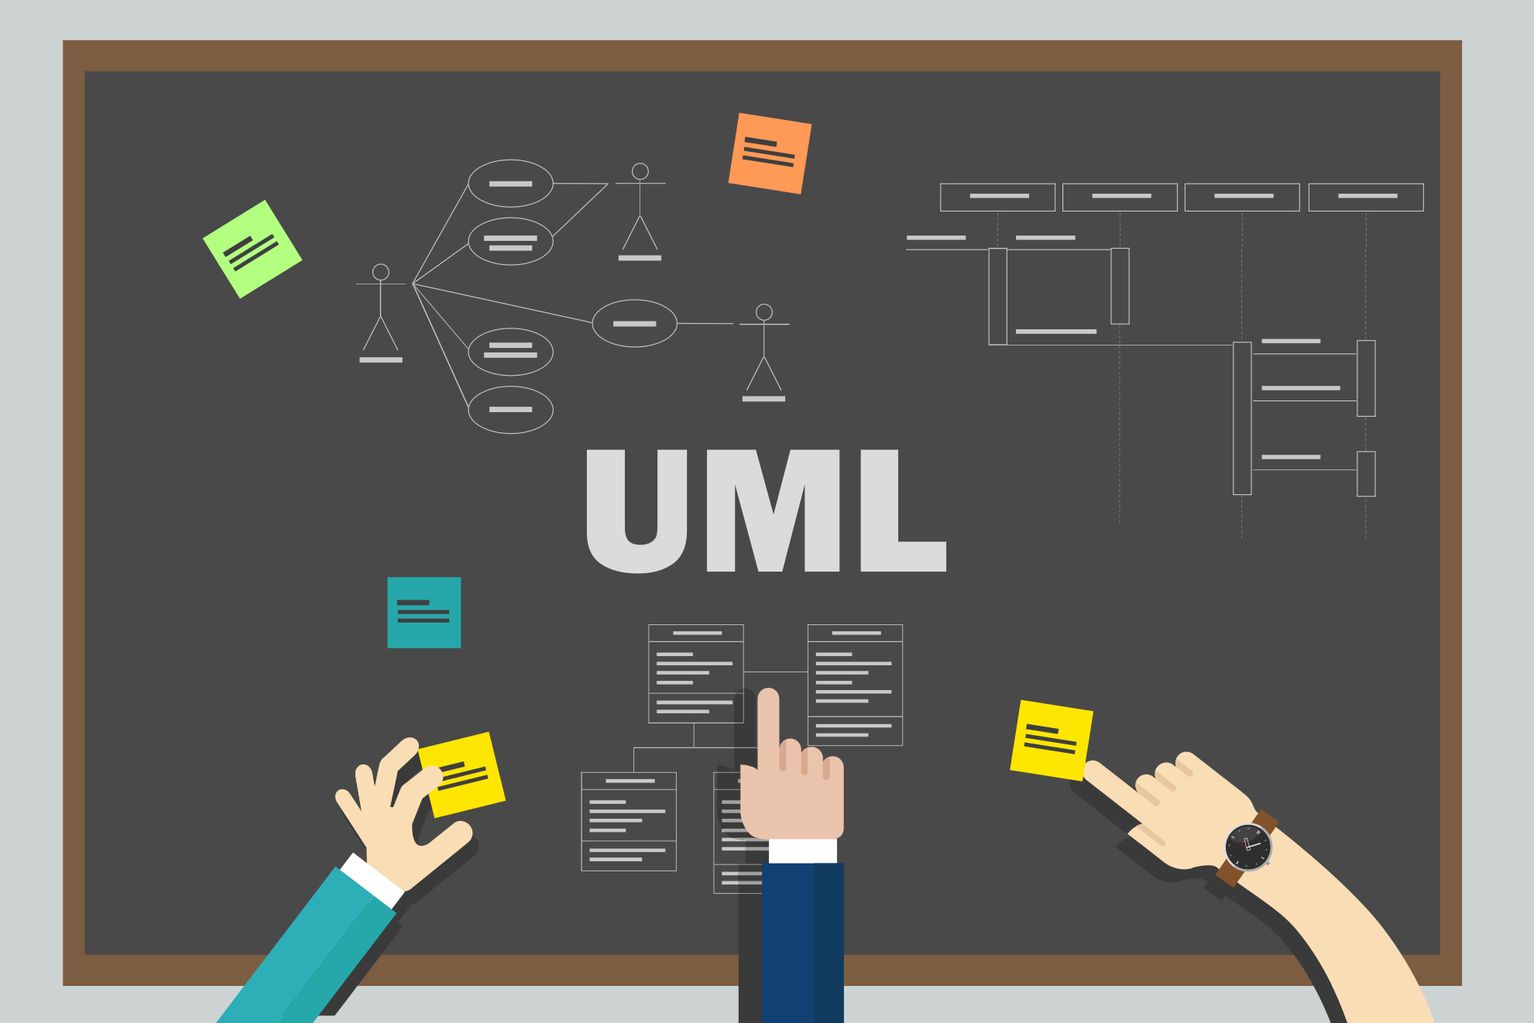 Tafel mit UML-Diagrammen